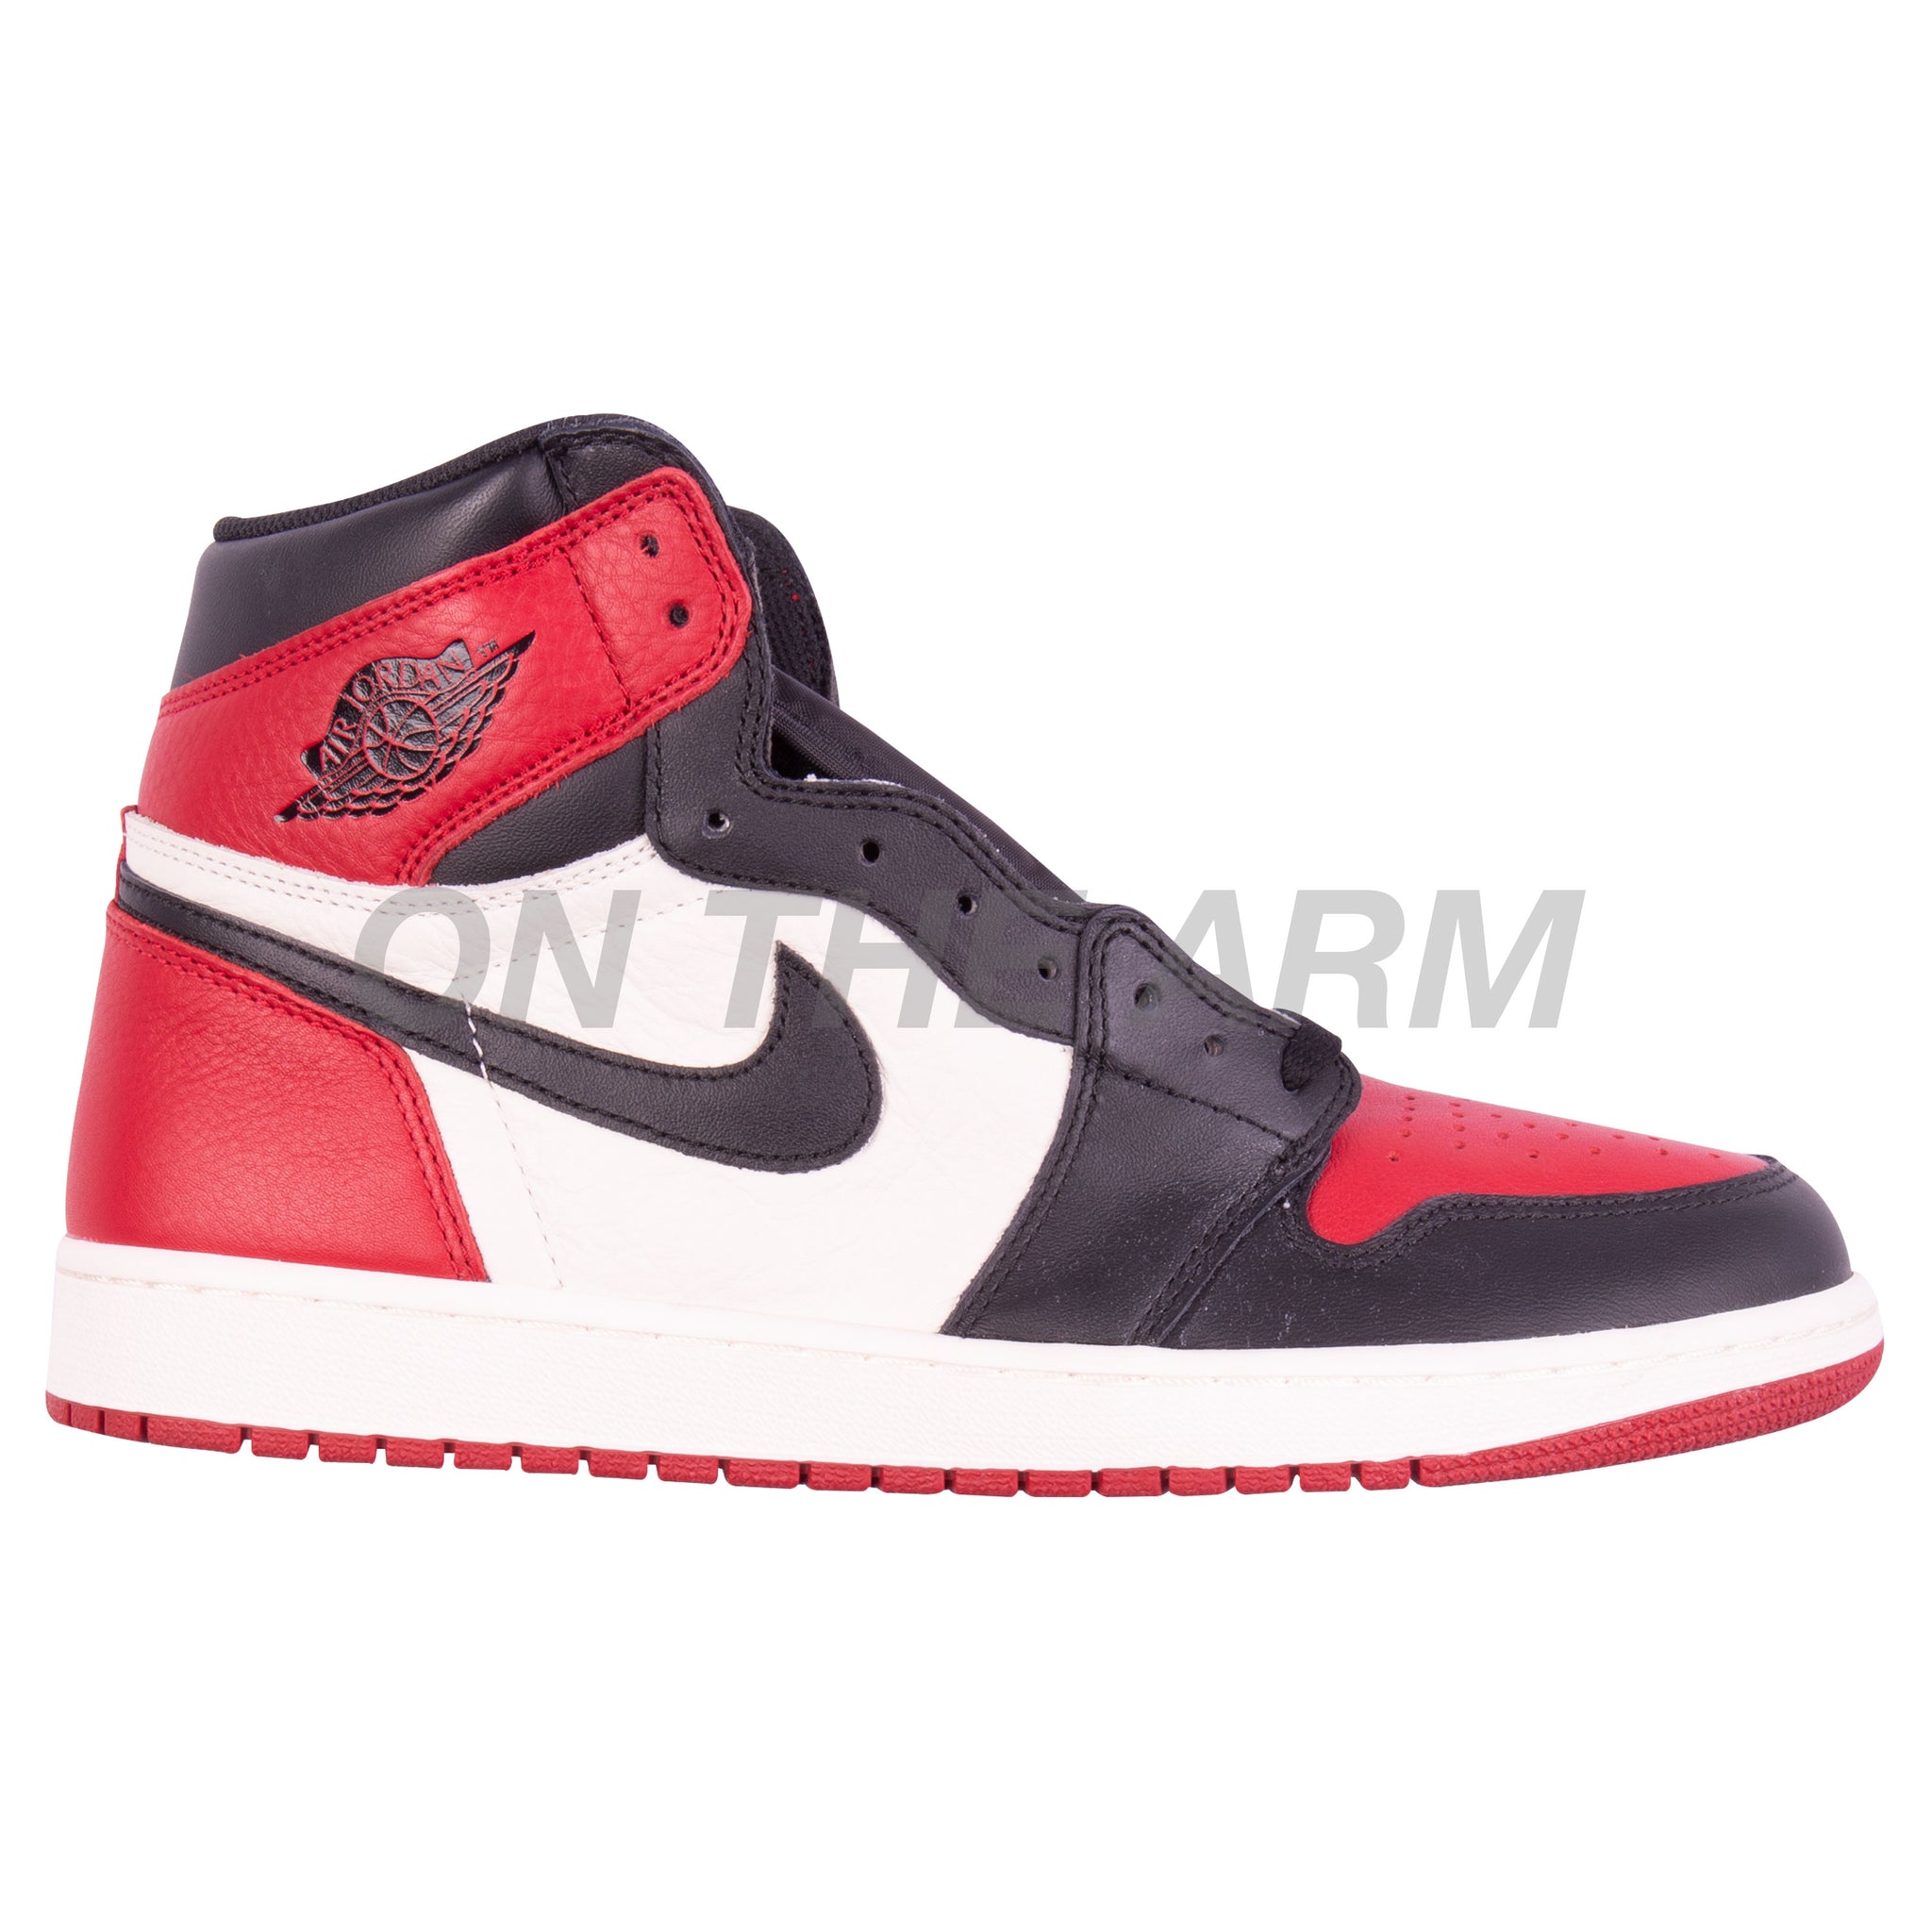 Nike Bred Toe Air Jordan 1